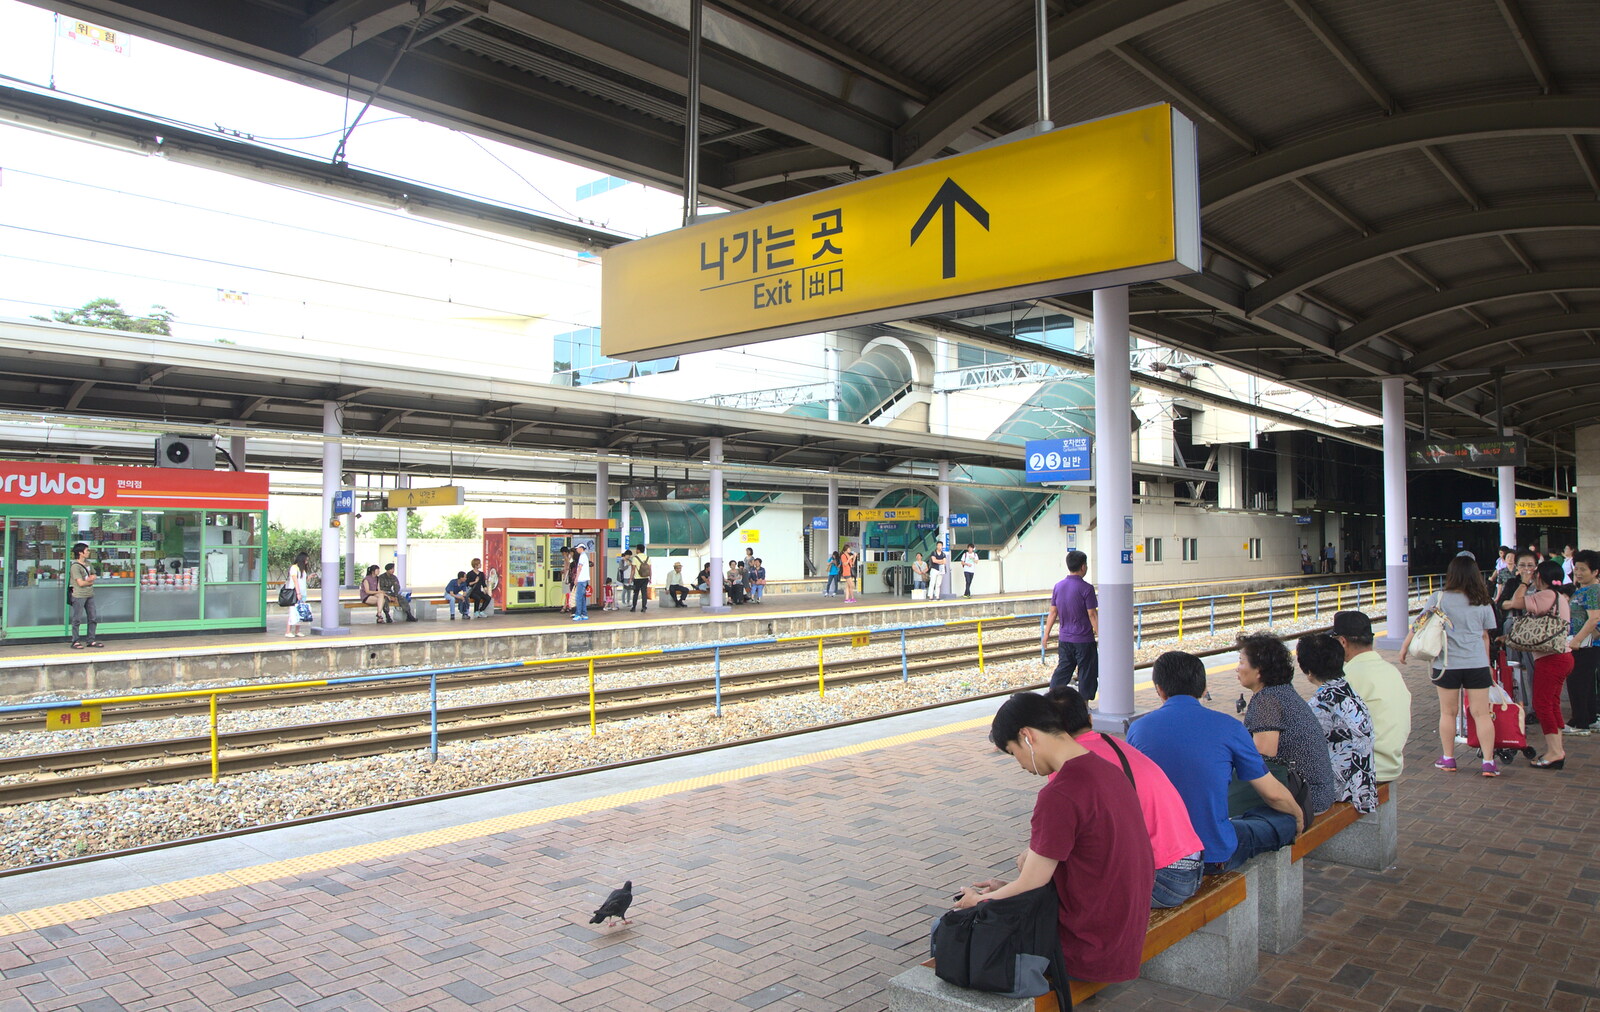 Daegu's suburban station from Seomun Market, Daegu, South Korea - 1st July 2012